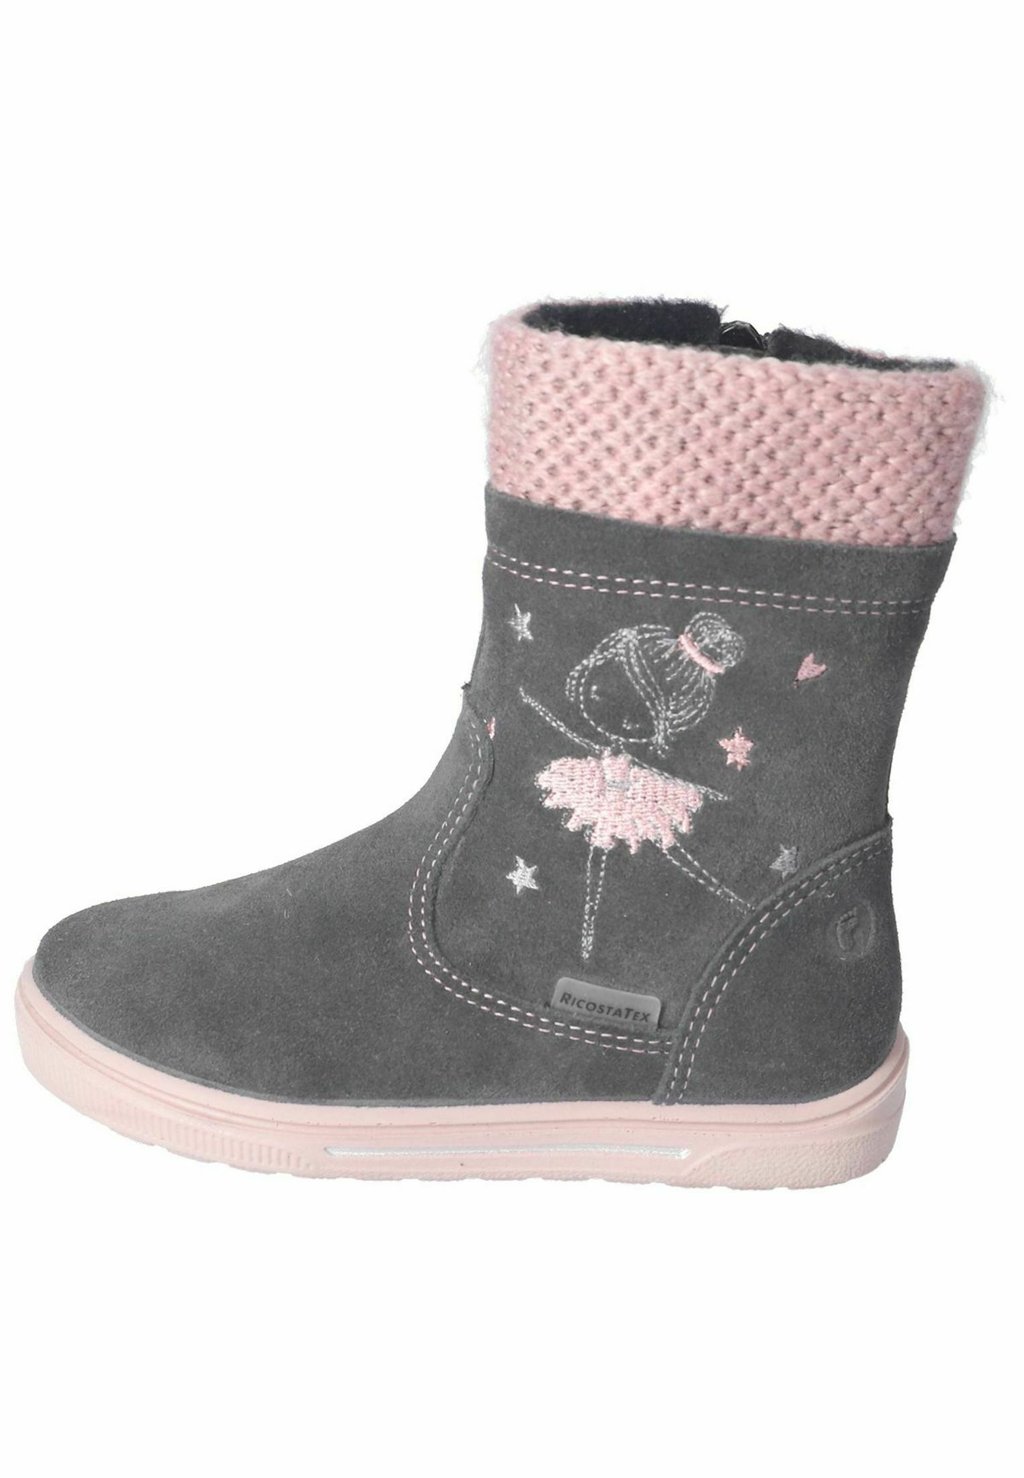 снегоступы зимние ботинки ricosta цвет pavone nebel Снегоступы/зимние ботинки Ricosta, цвет asphalt rose